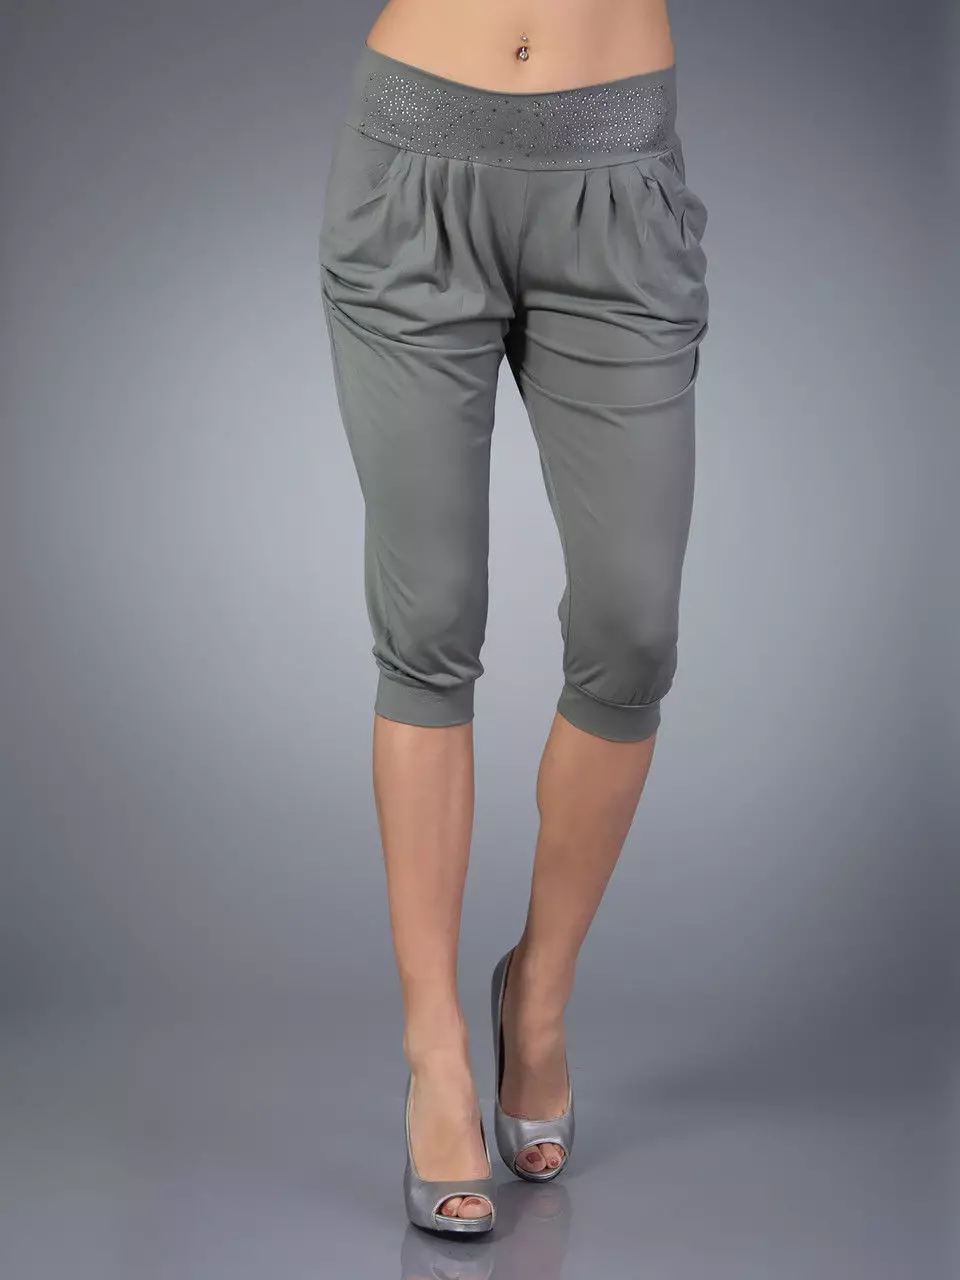 Modne hlače 2021: Ženske elegantne modele, modni trendi 917_159